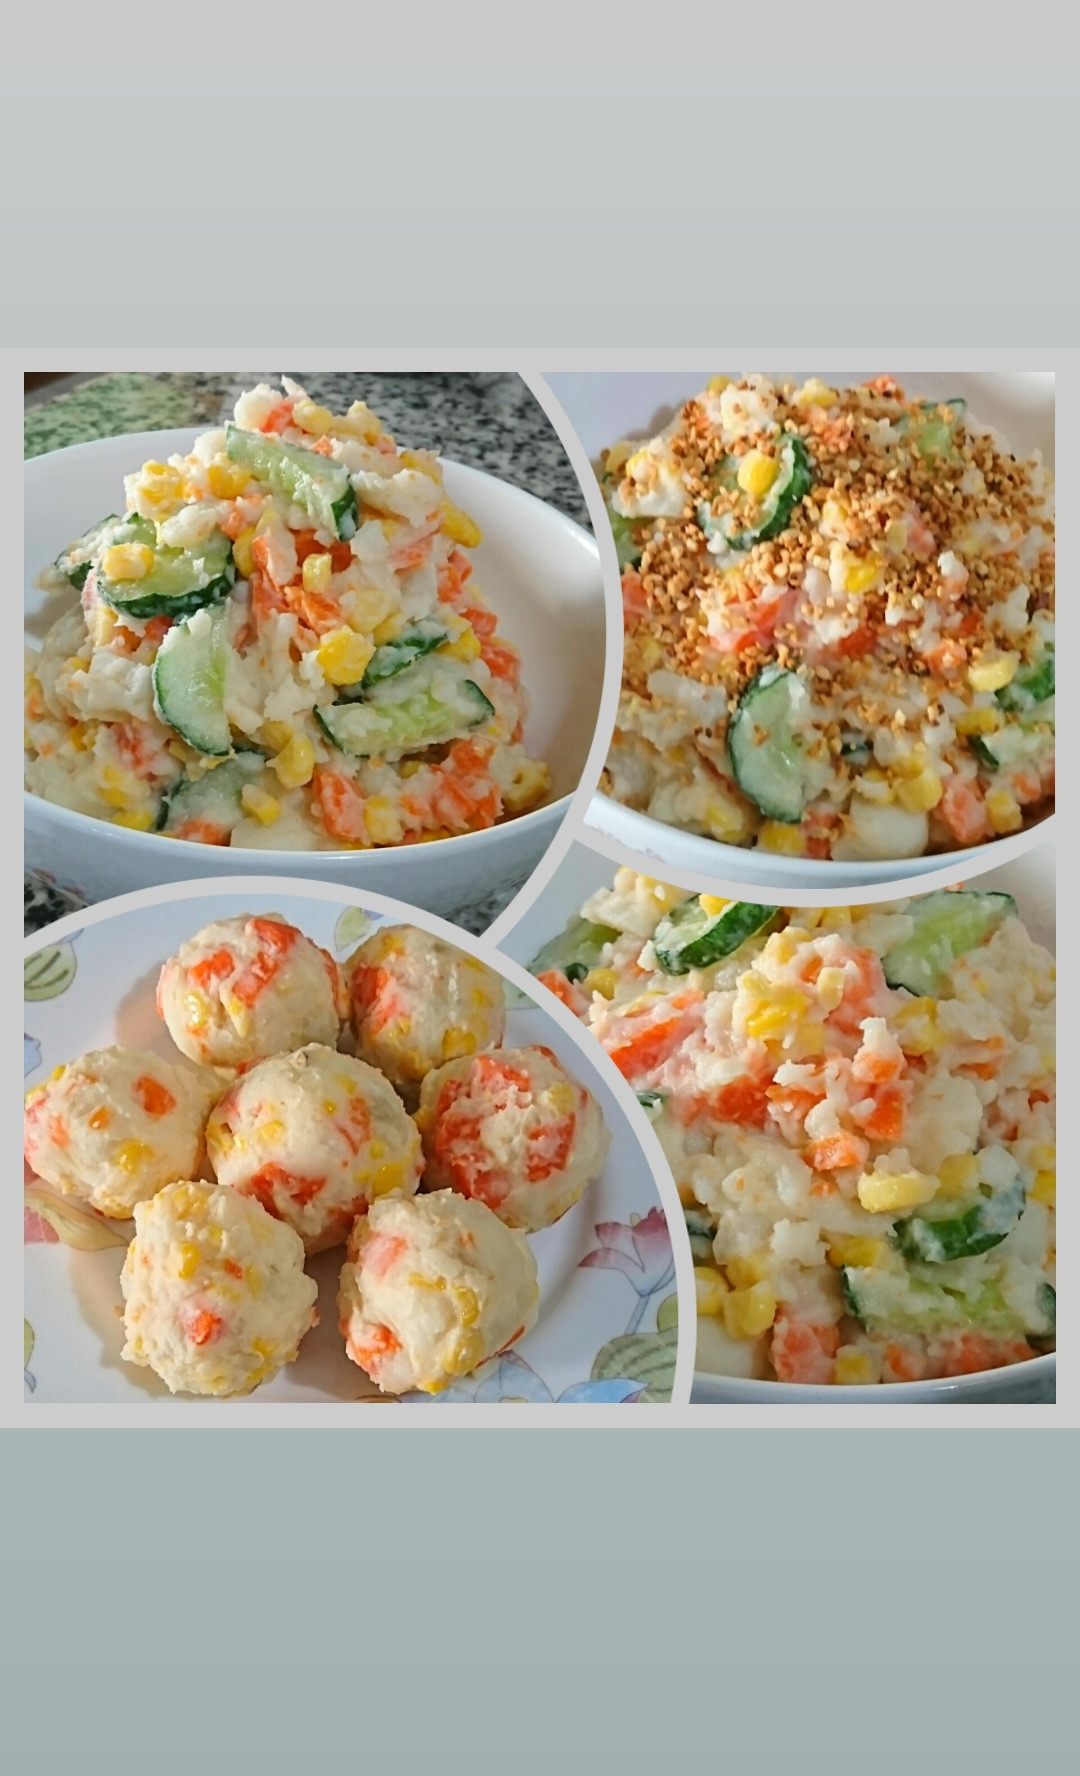 素食馬鈴薯沙拉by Xiuwan Pan 愛料理